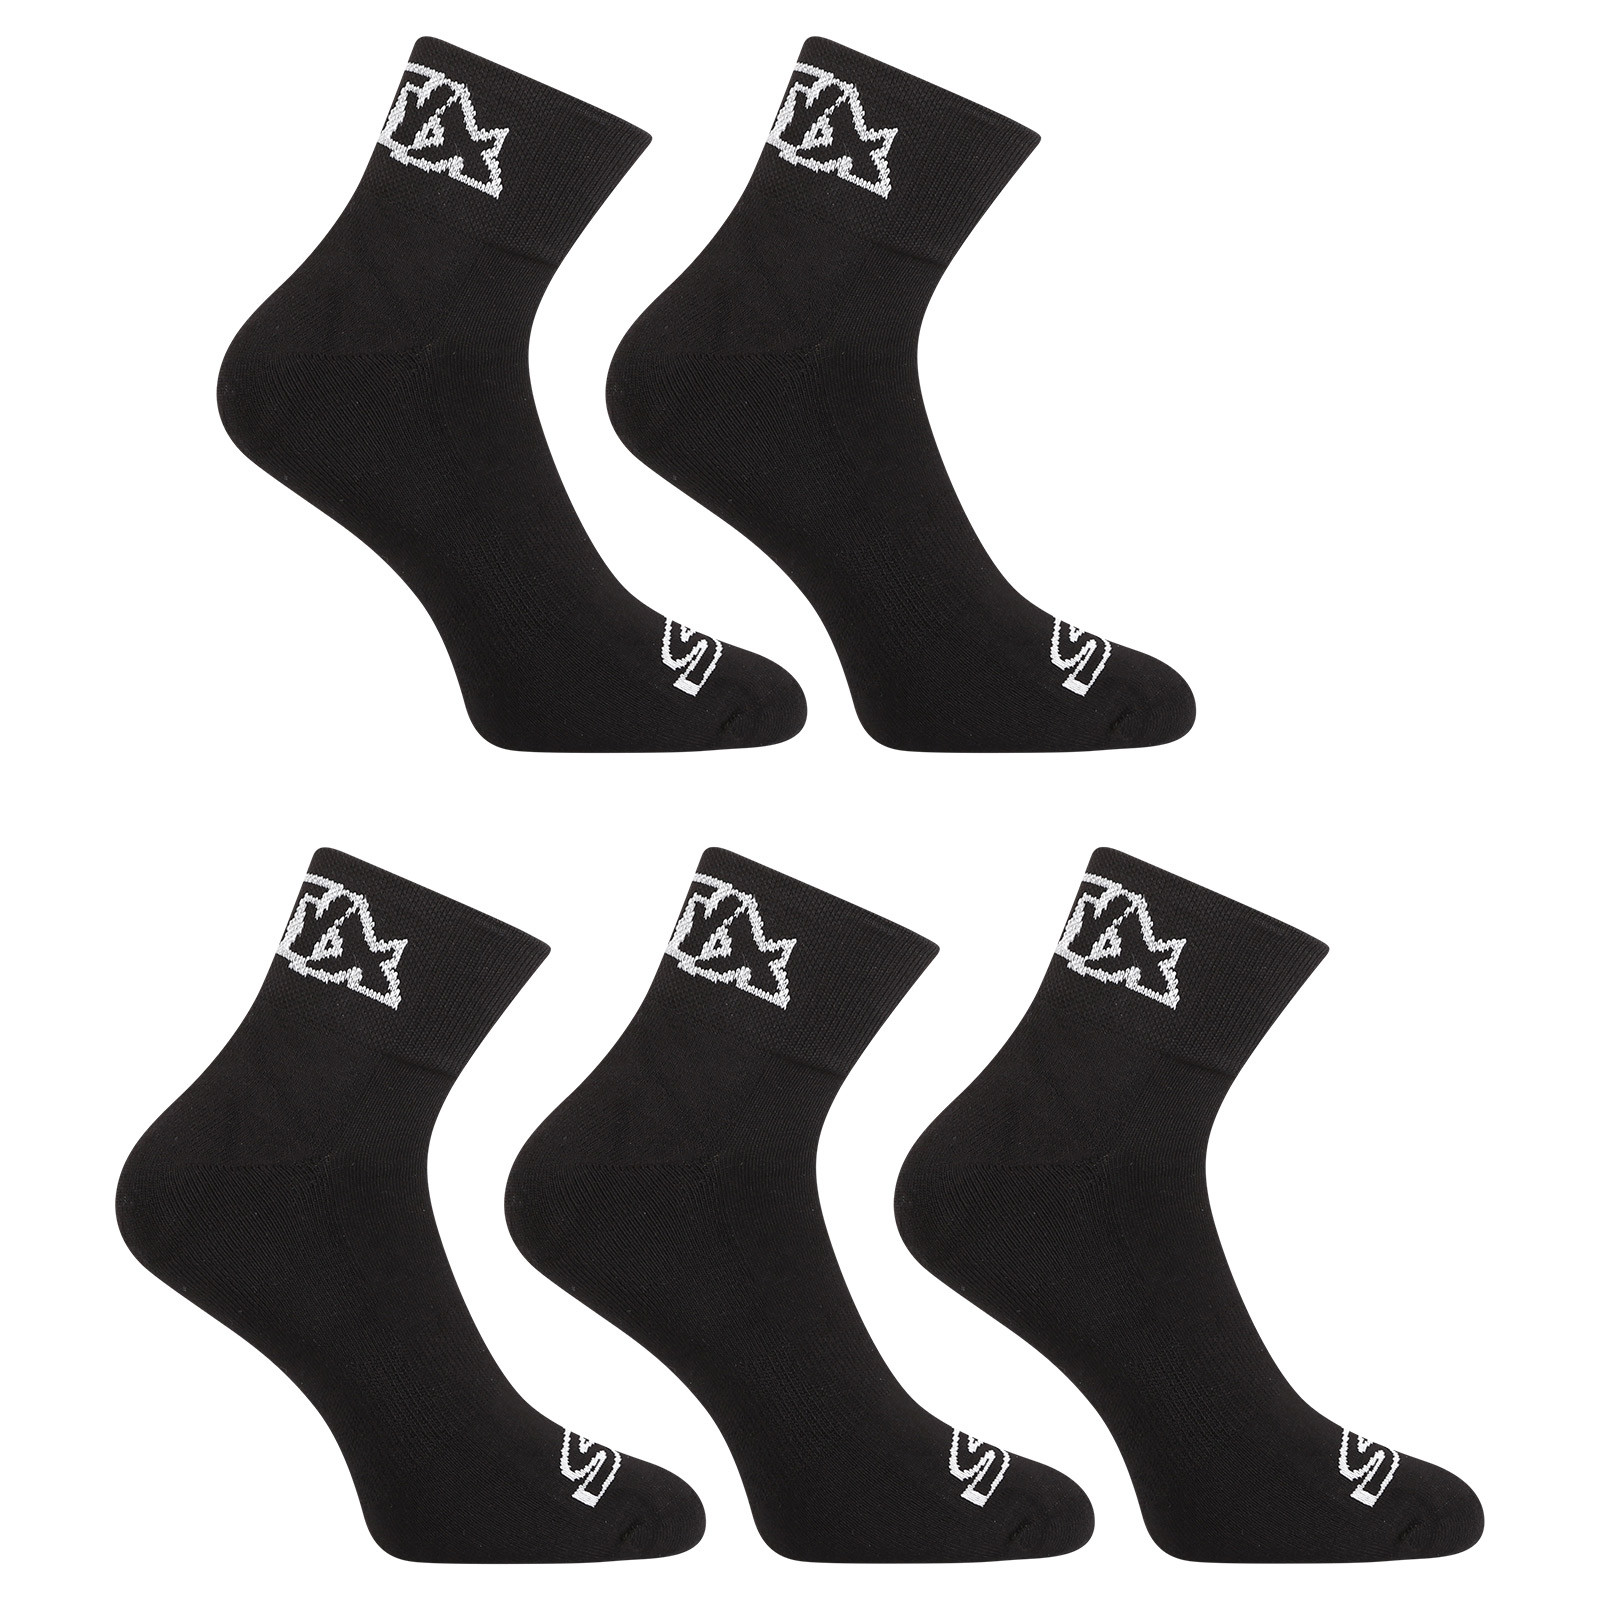 E-shop 5PACK ponožky Styx kotníkové černé